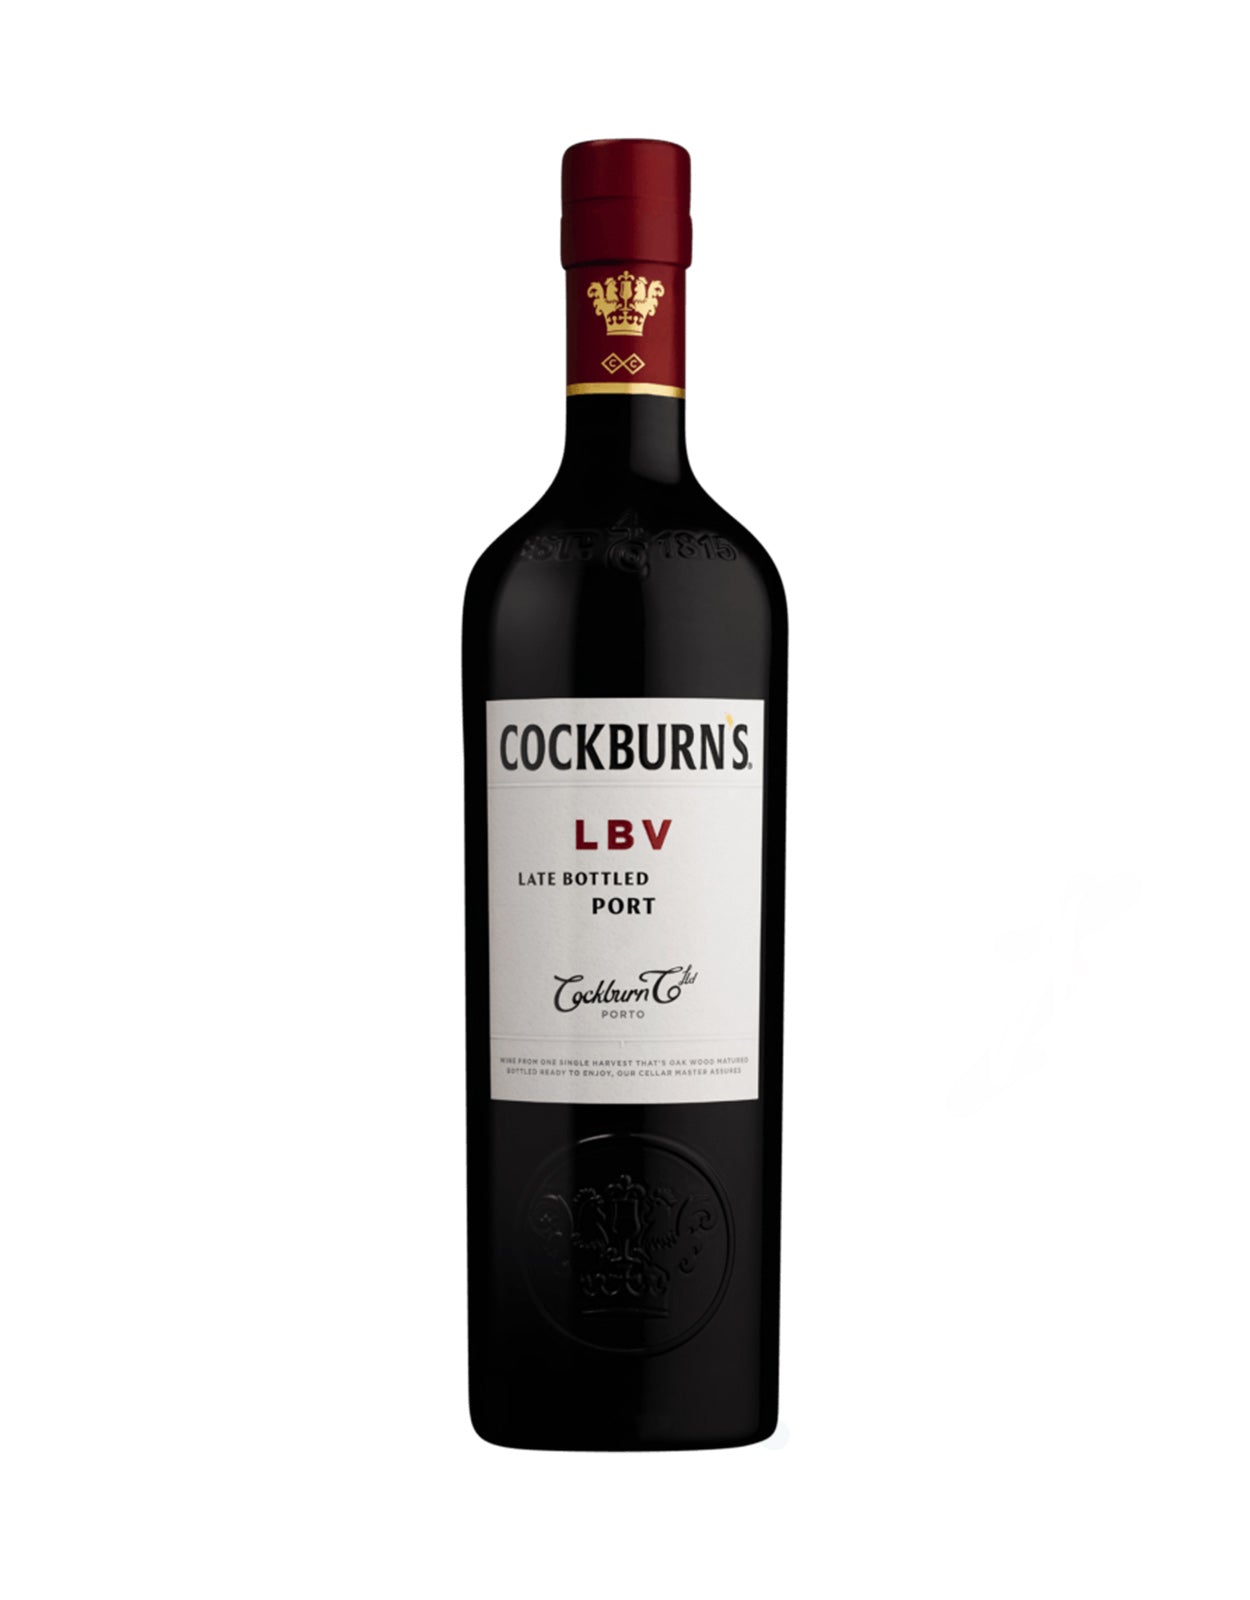 Cockburn's Late Bottled Vintage Port 2016